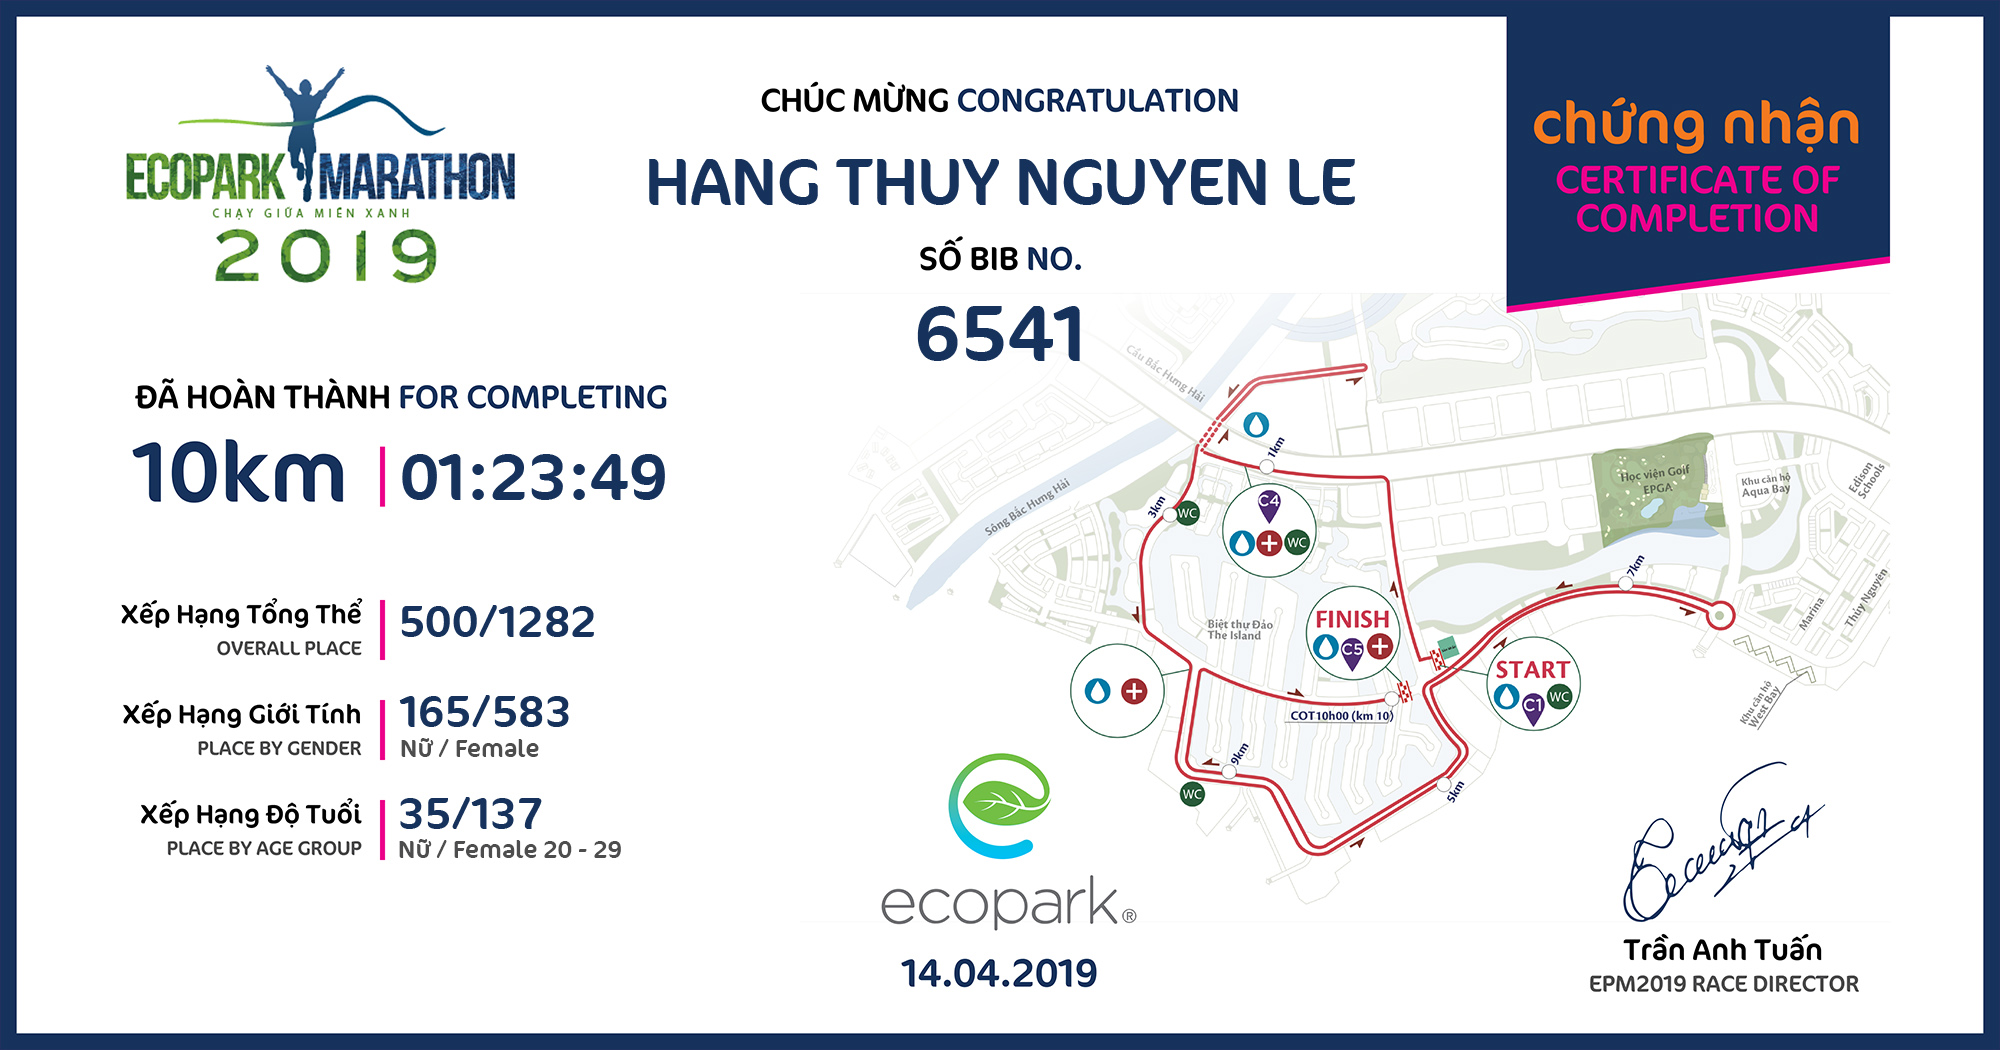 6541 - Hang Thuy Nguyen Le